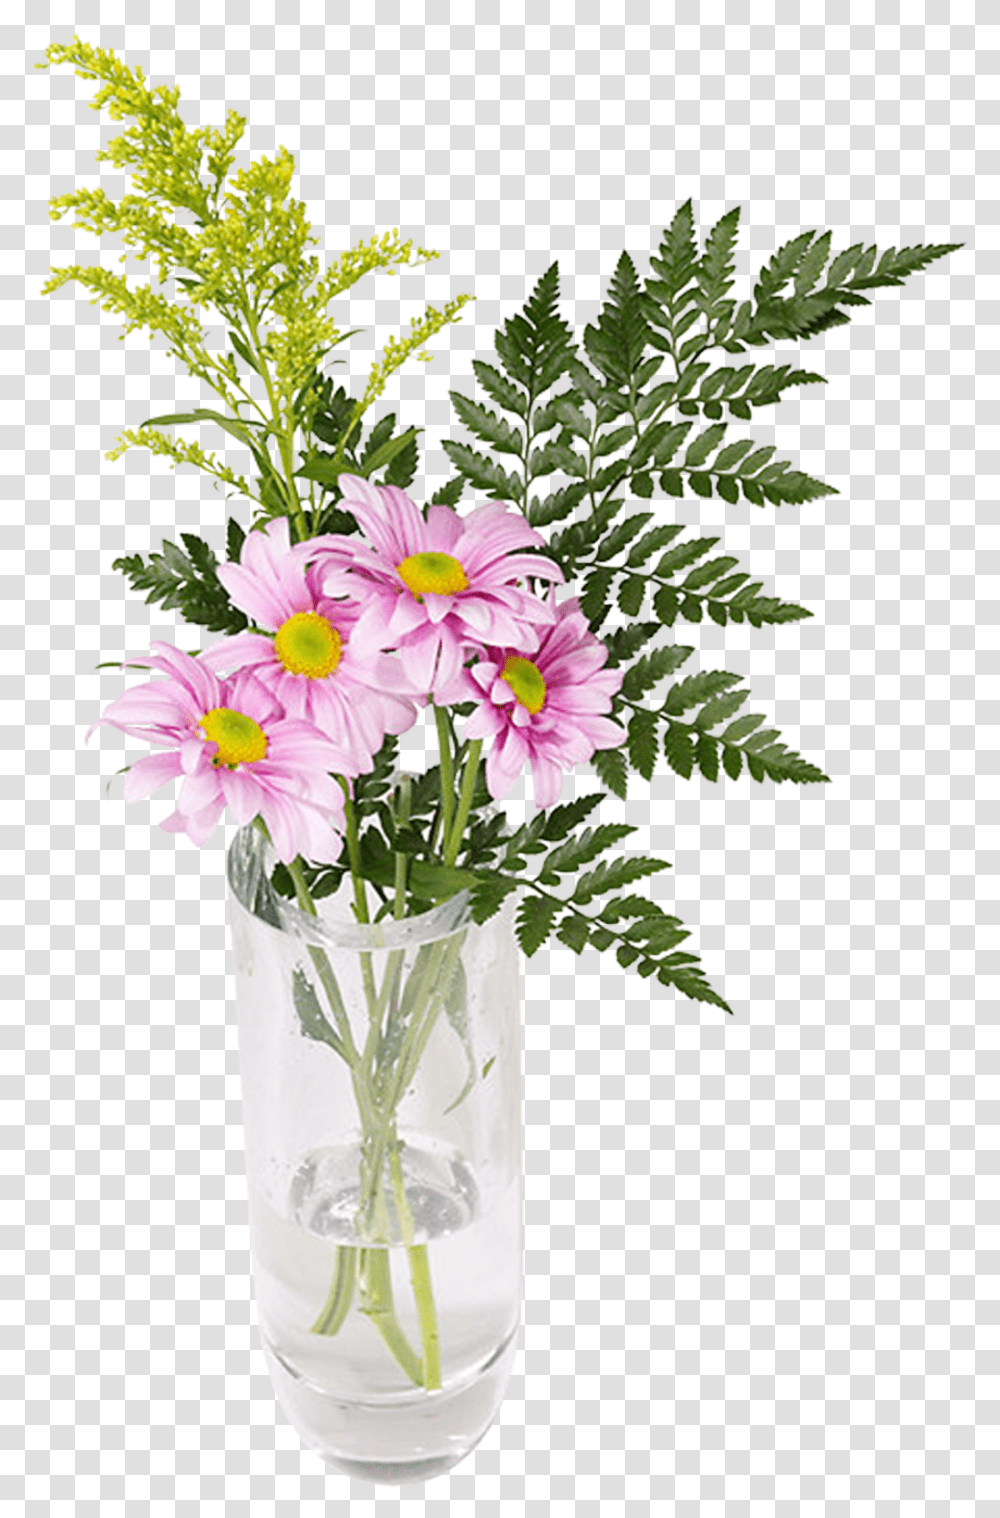 Imgenes De Arreglos Florales En Floreros Bouquet, Plant, Flower, Blossom, Flower Arrangement Transparent Png